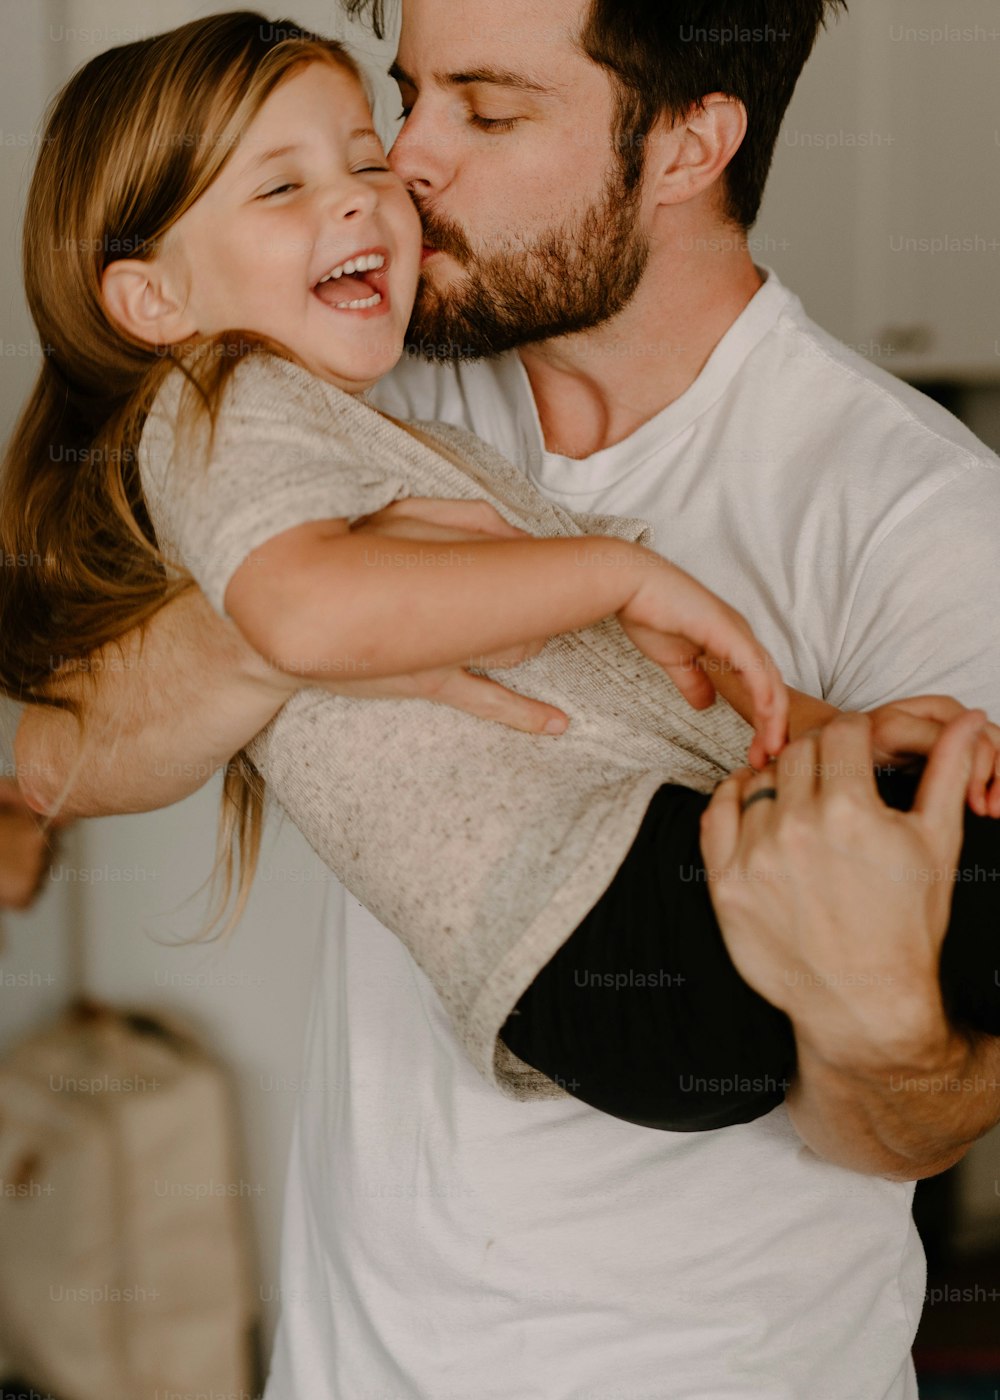 Un hombre sosteniendo a una niña en sus brazos